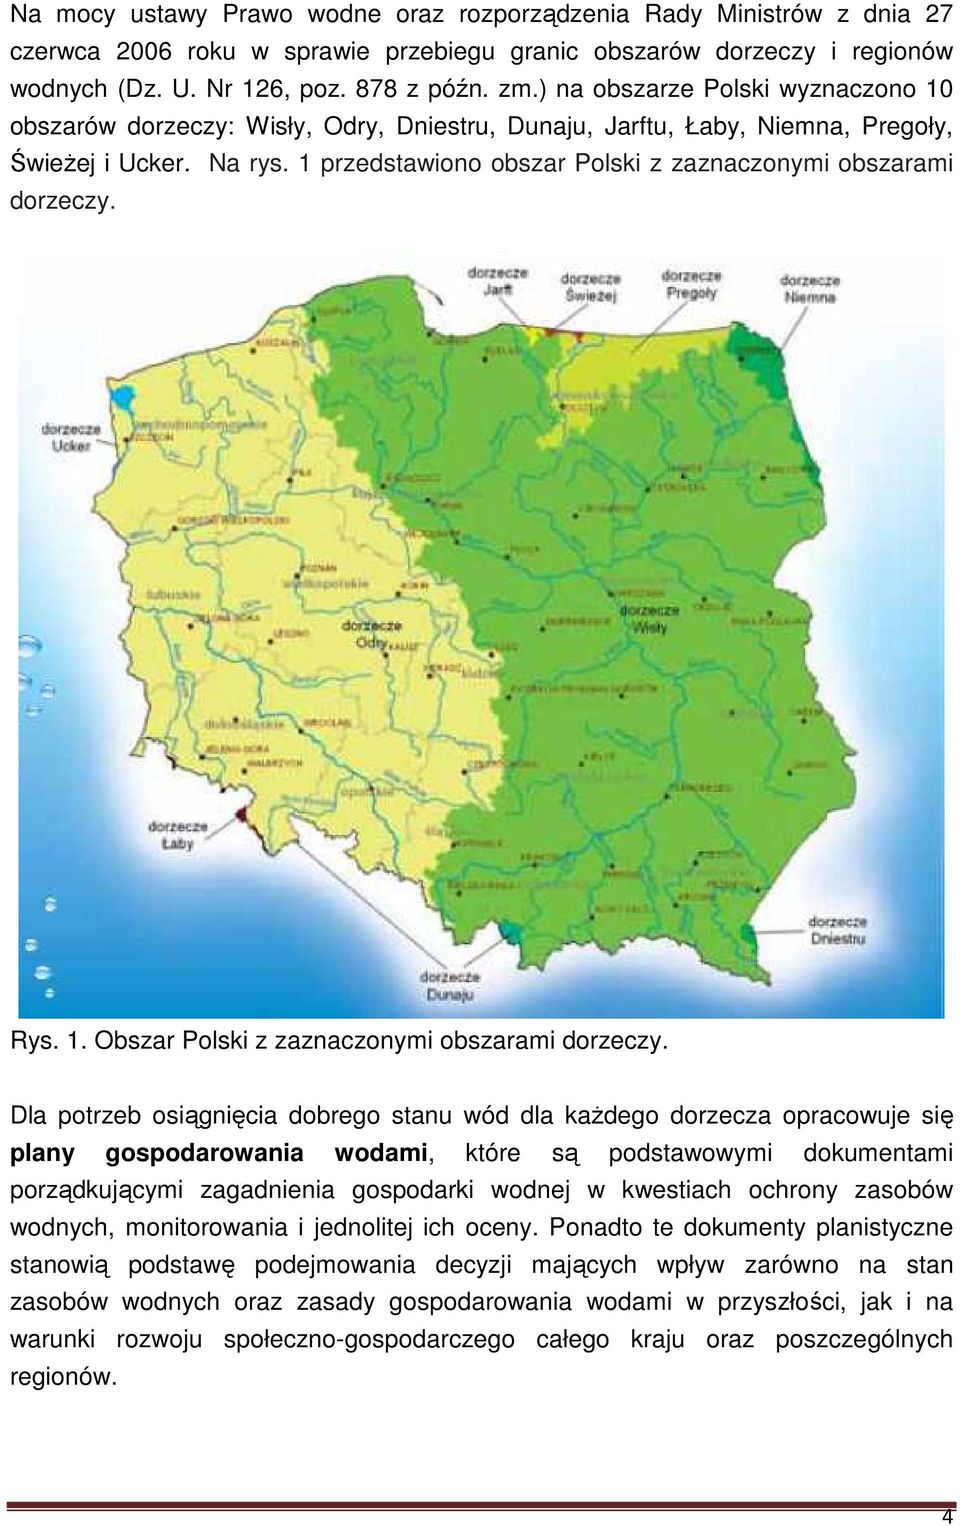 1 przedstawiono obszar Polski z zaznaczonymi obszarami dorzeczy. Rys. 1. Obszar Polski z zaznaczonymi obszarami dorzeczy.